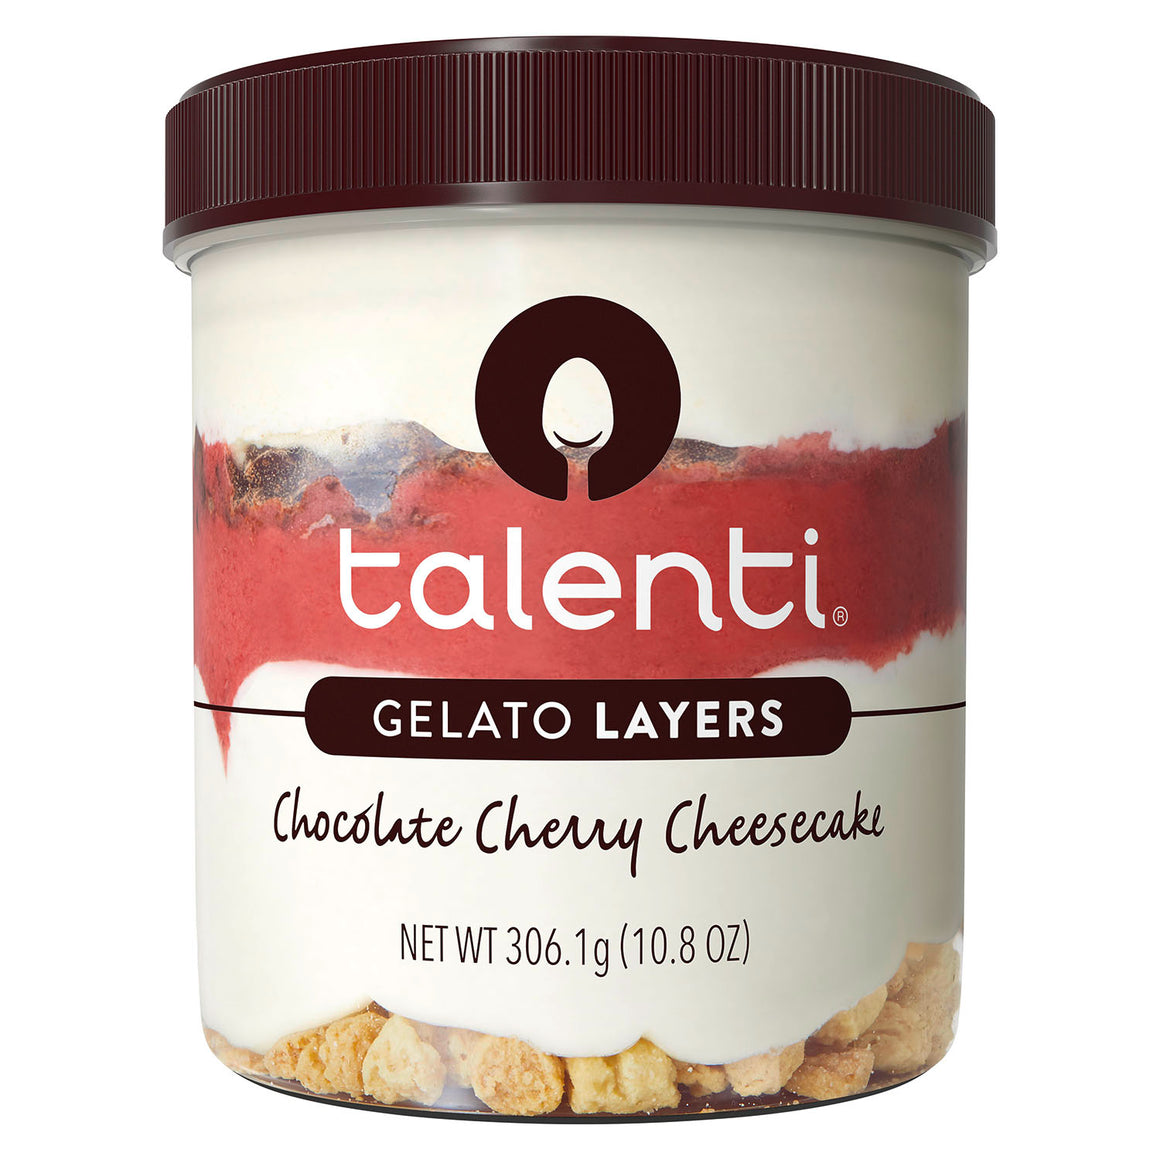 Talenti Chocolate Cherry Cheesecake Gelato Layers 306gm